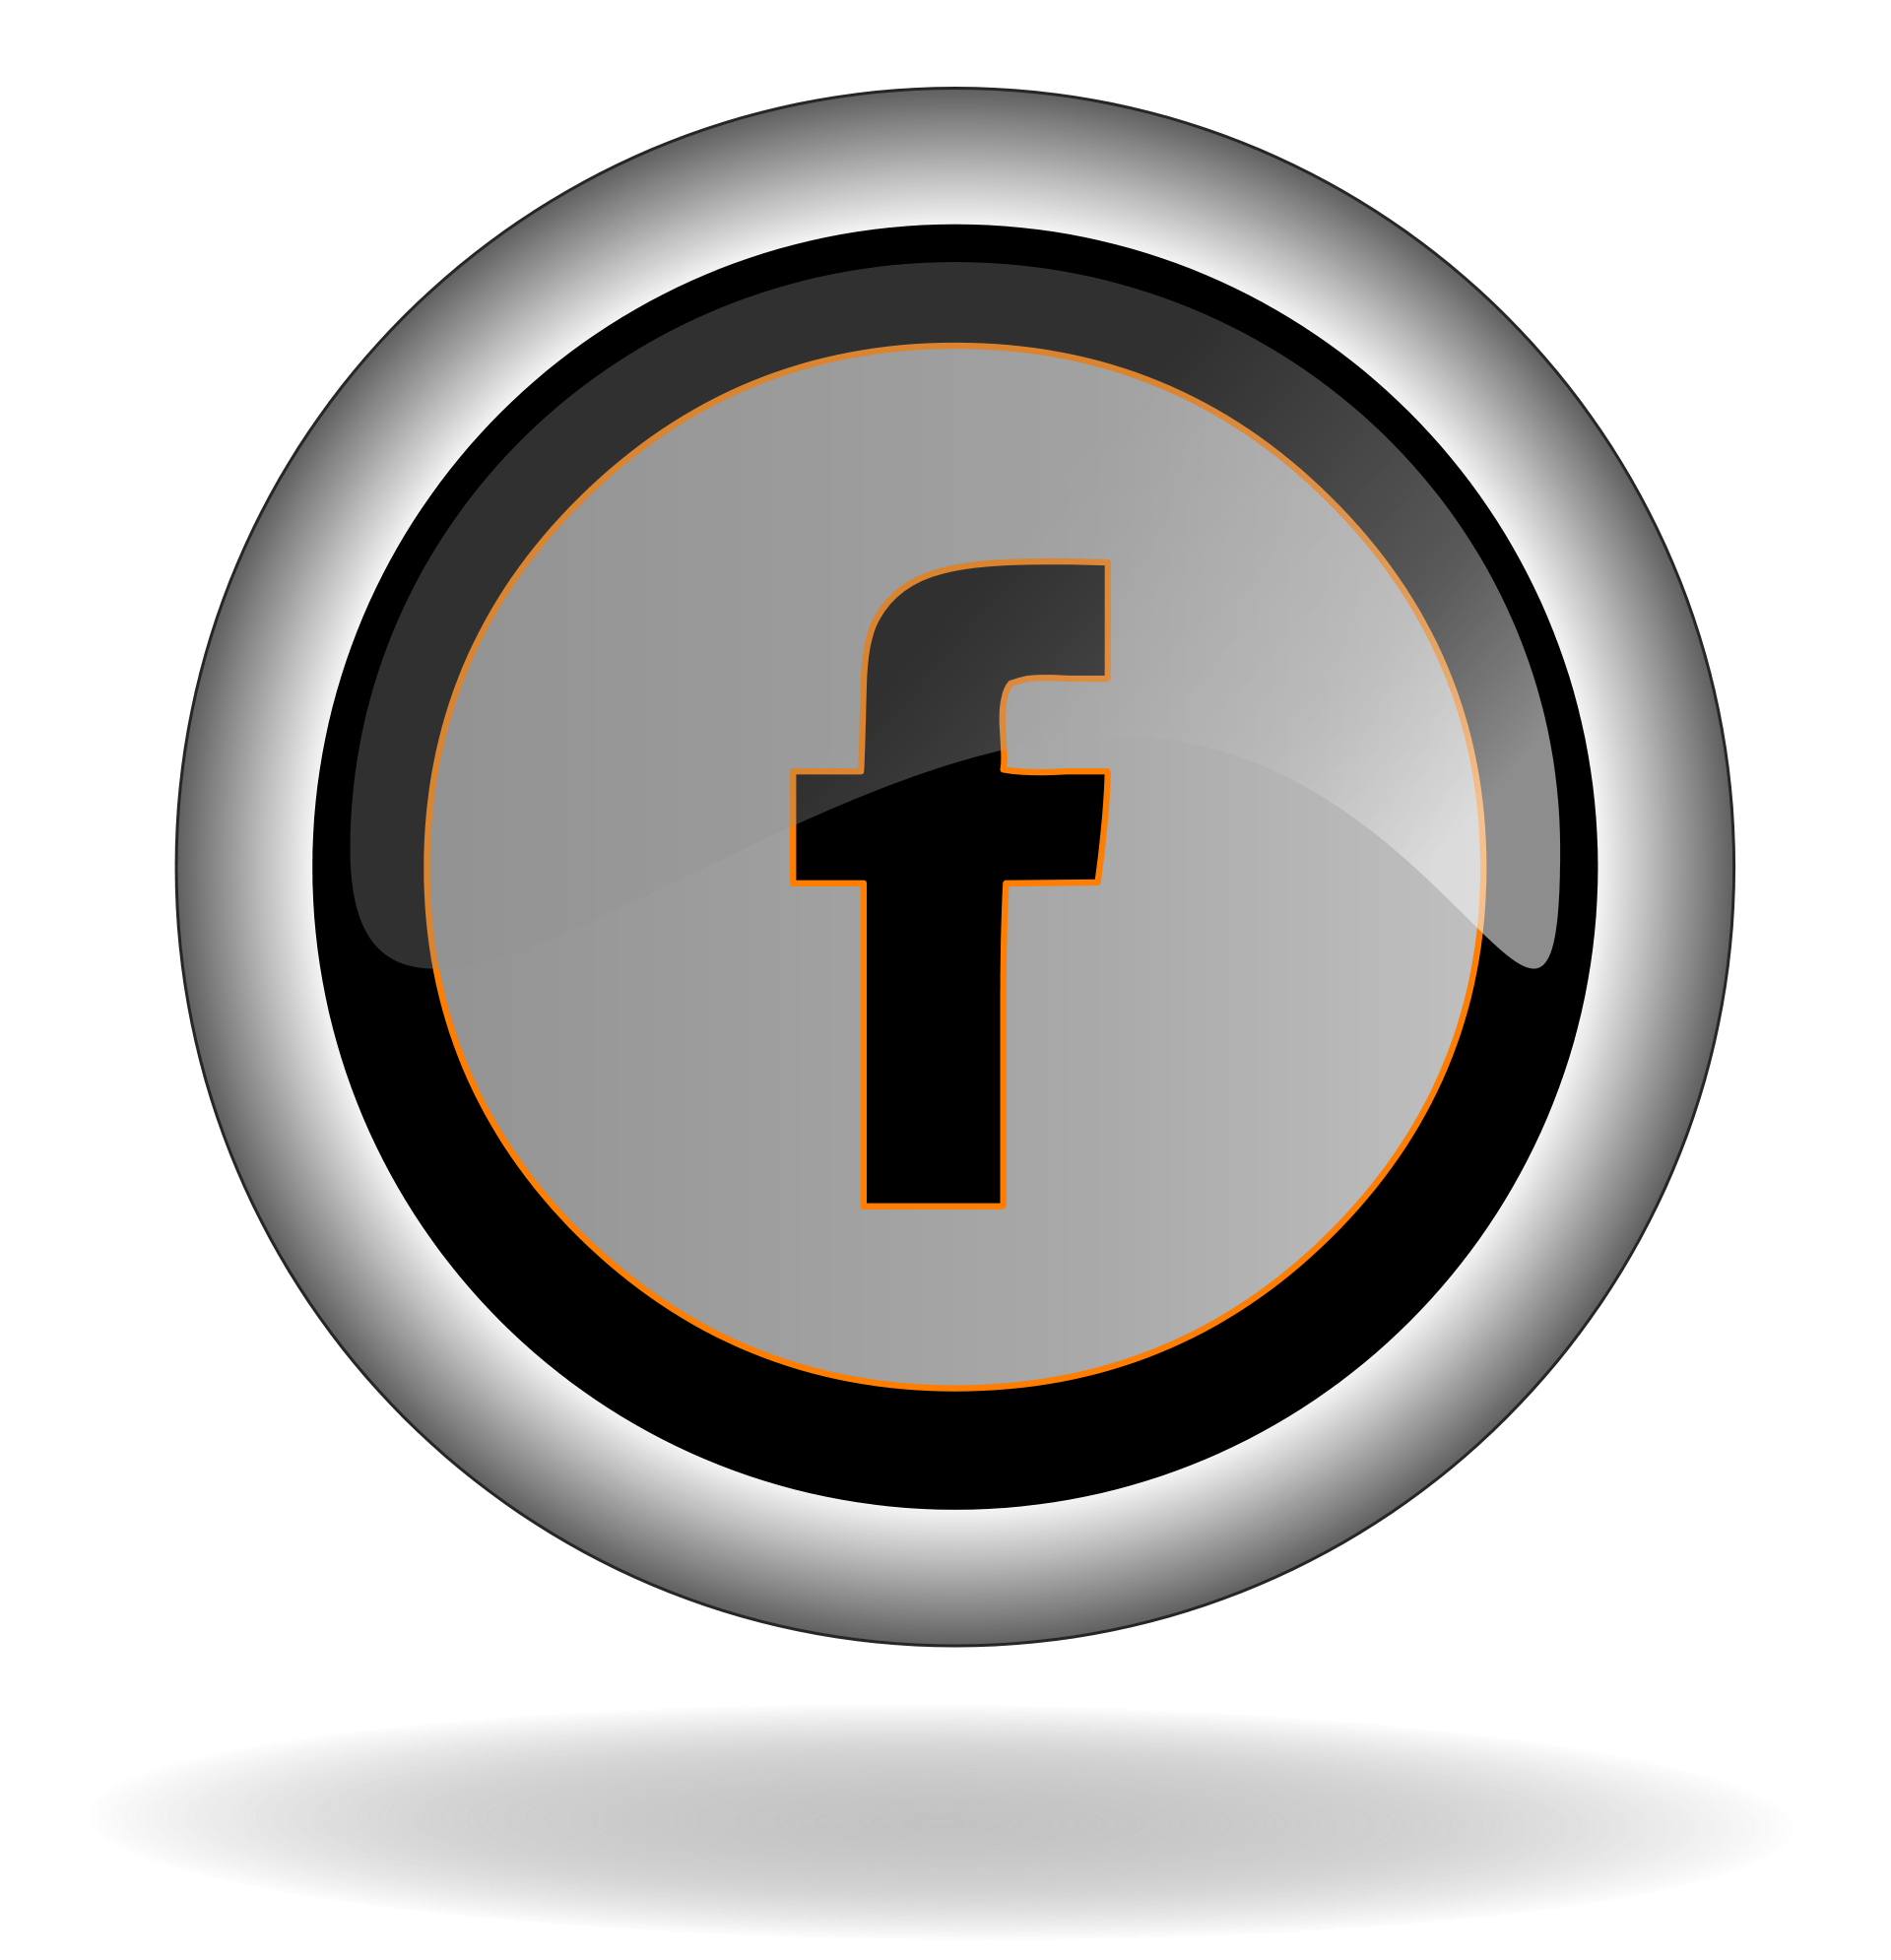 Icône de logo Facebook